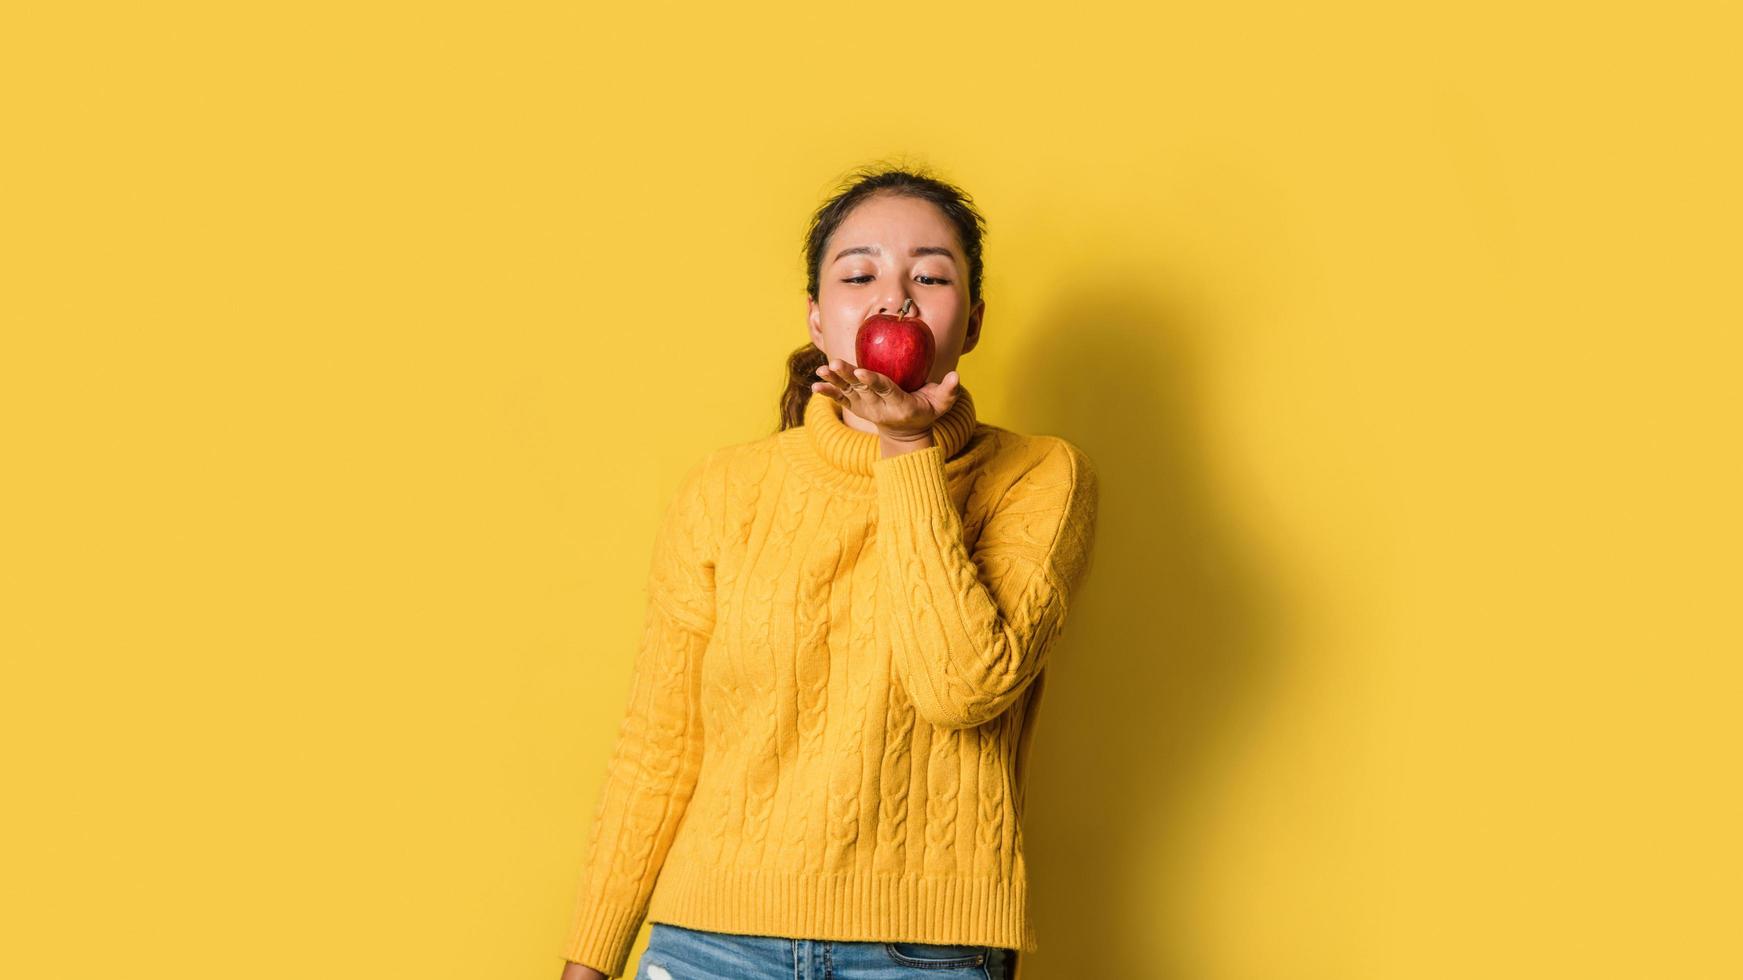 vrolijke jonge vrouw op gele achtergrond in studio met een rode appel in haar hand. het concept van lichaamsbeweging voor een goede gezondheid. gezondheidsliefhebber foto